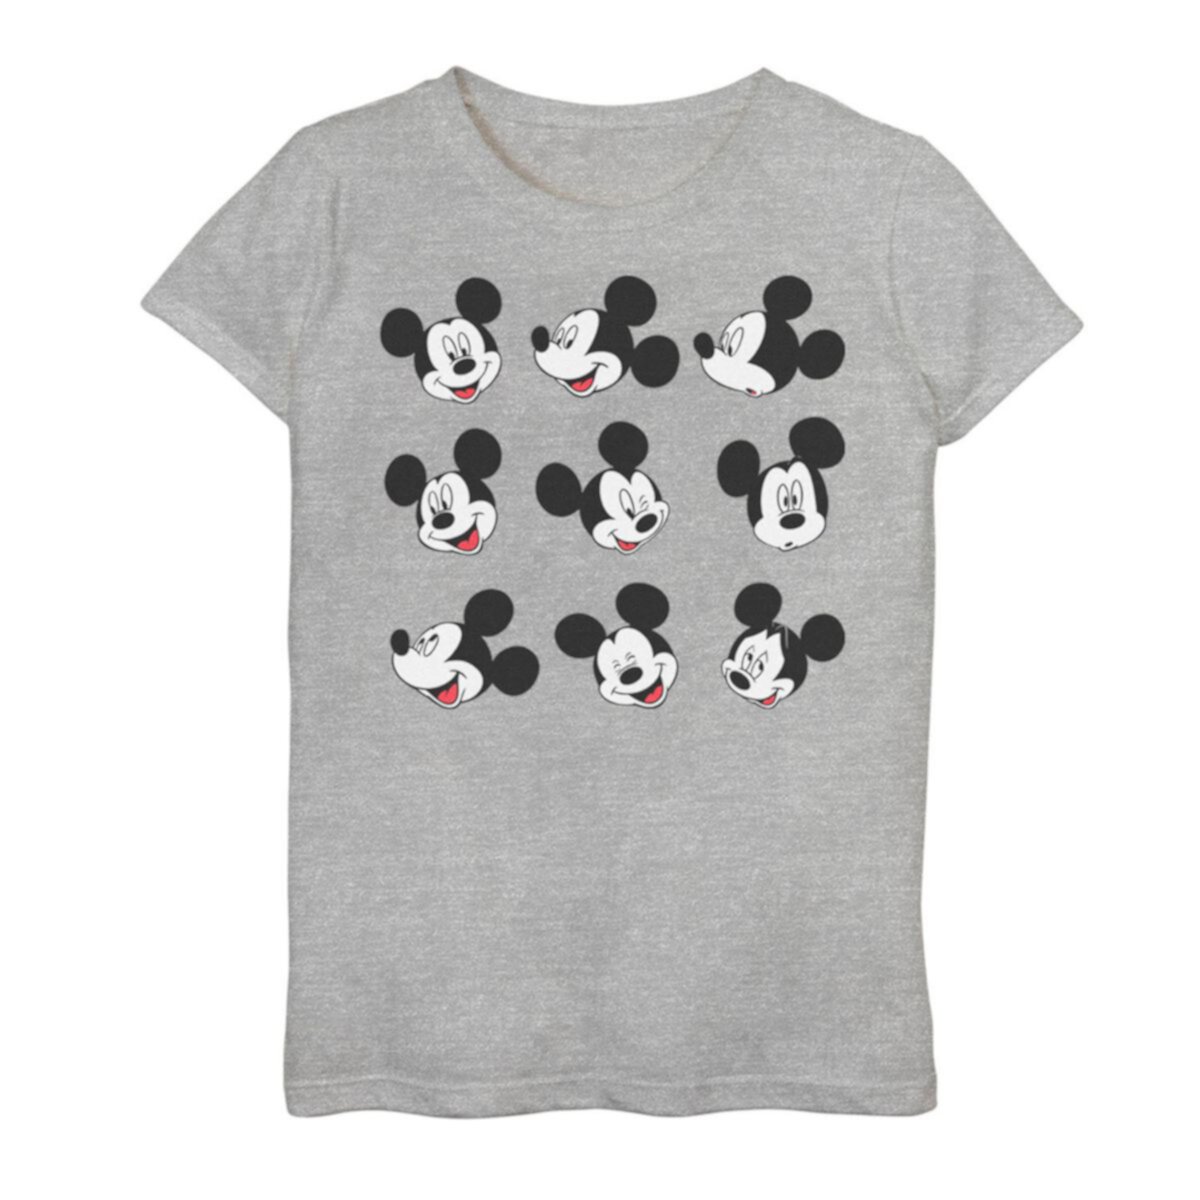 Футболка Disney Mickey And Friends с изображением лица Микки Мауса в сетку для девочек 7-16 лет Disney